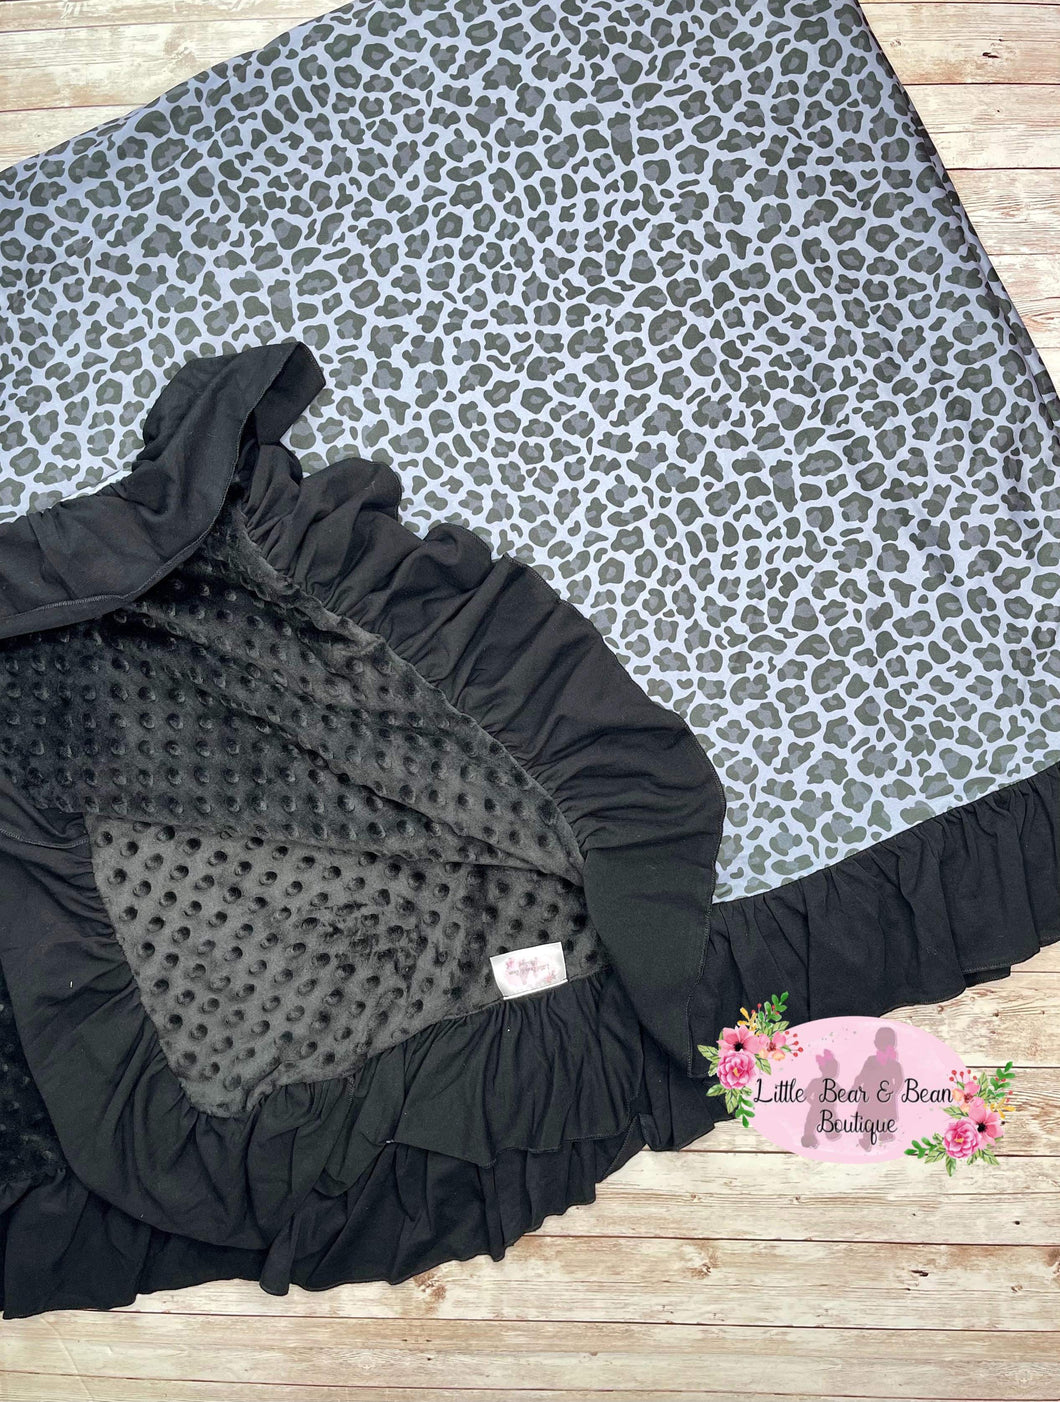 Black Leopard Ruffled Minky Blankets 64X74